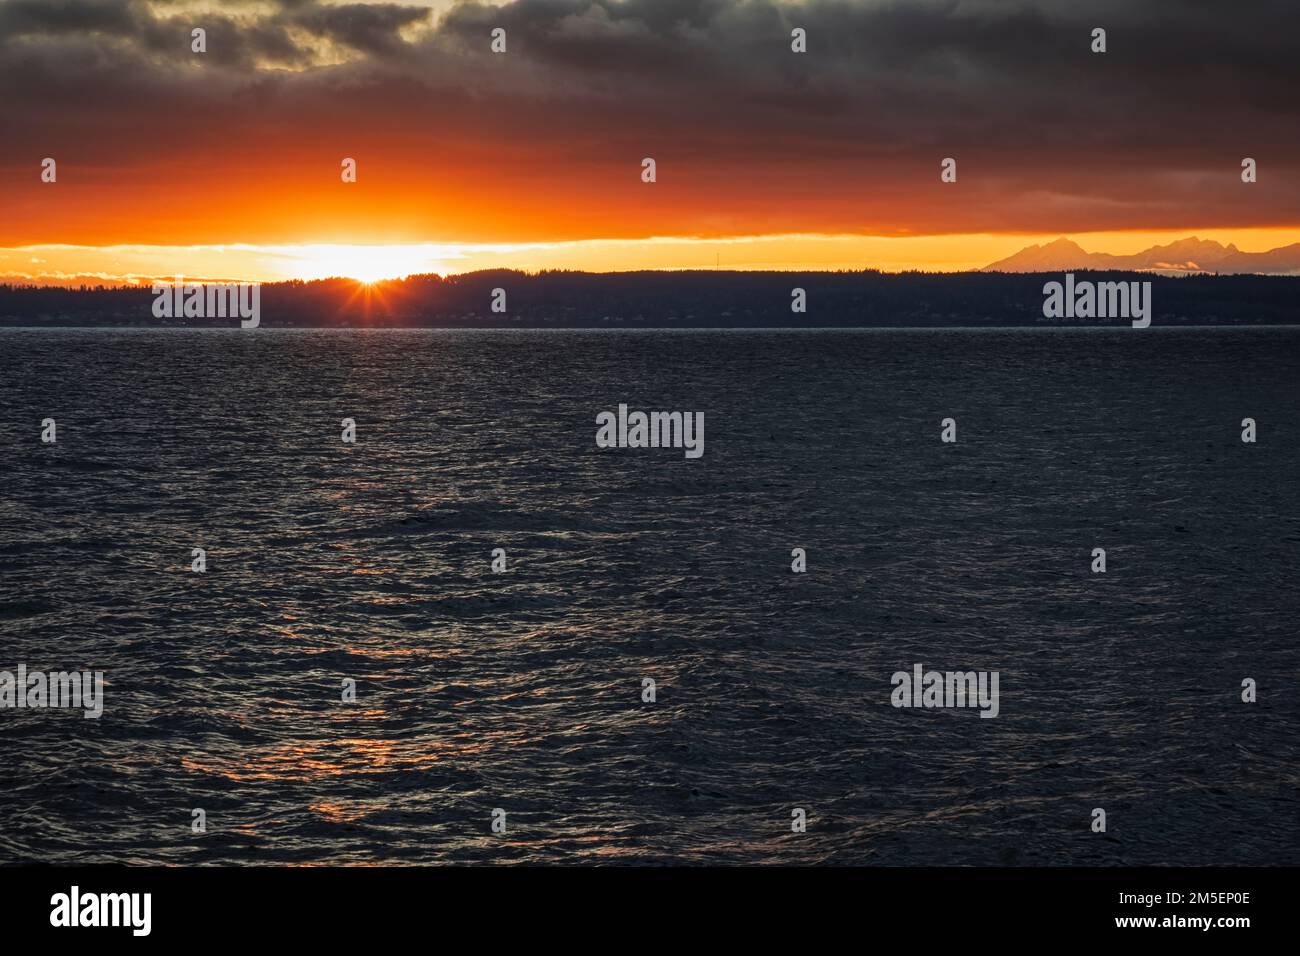 WA22894-00...WASHINGTON - Sunset setting over the Kitsap Peninsula and the Salish Sea/Puget Sound. Stock Photo